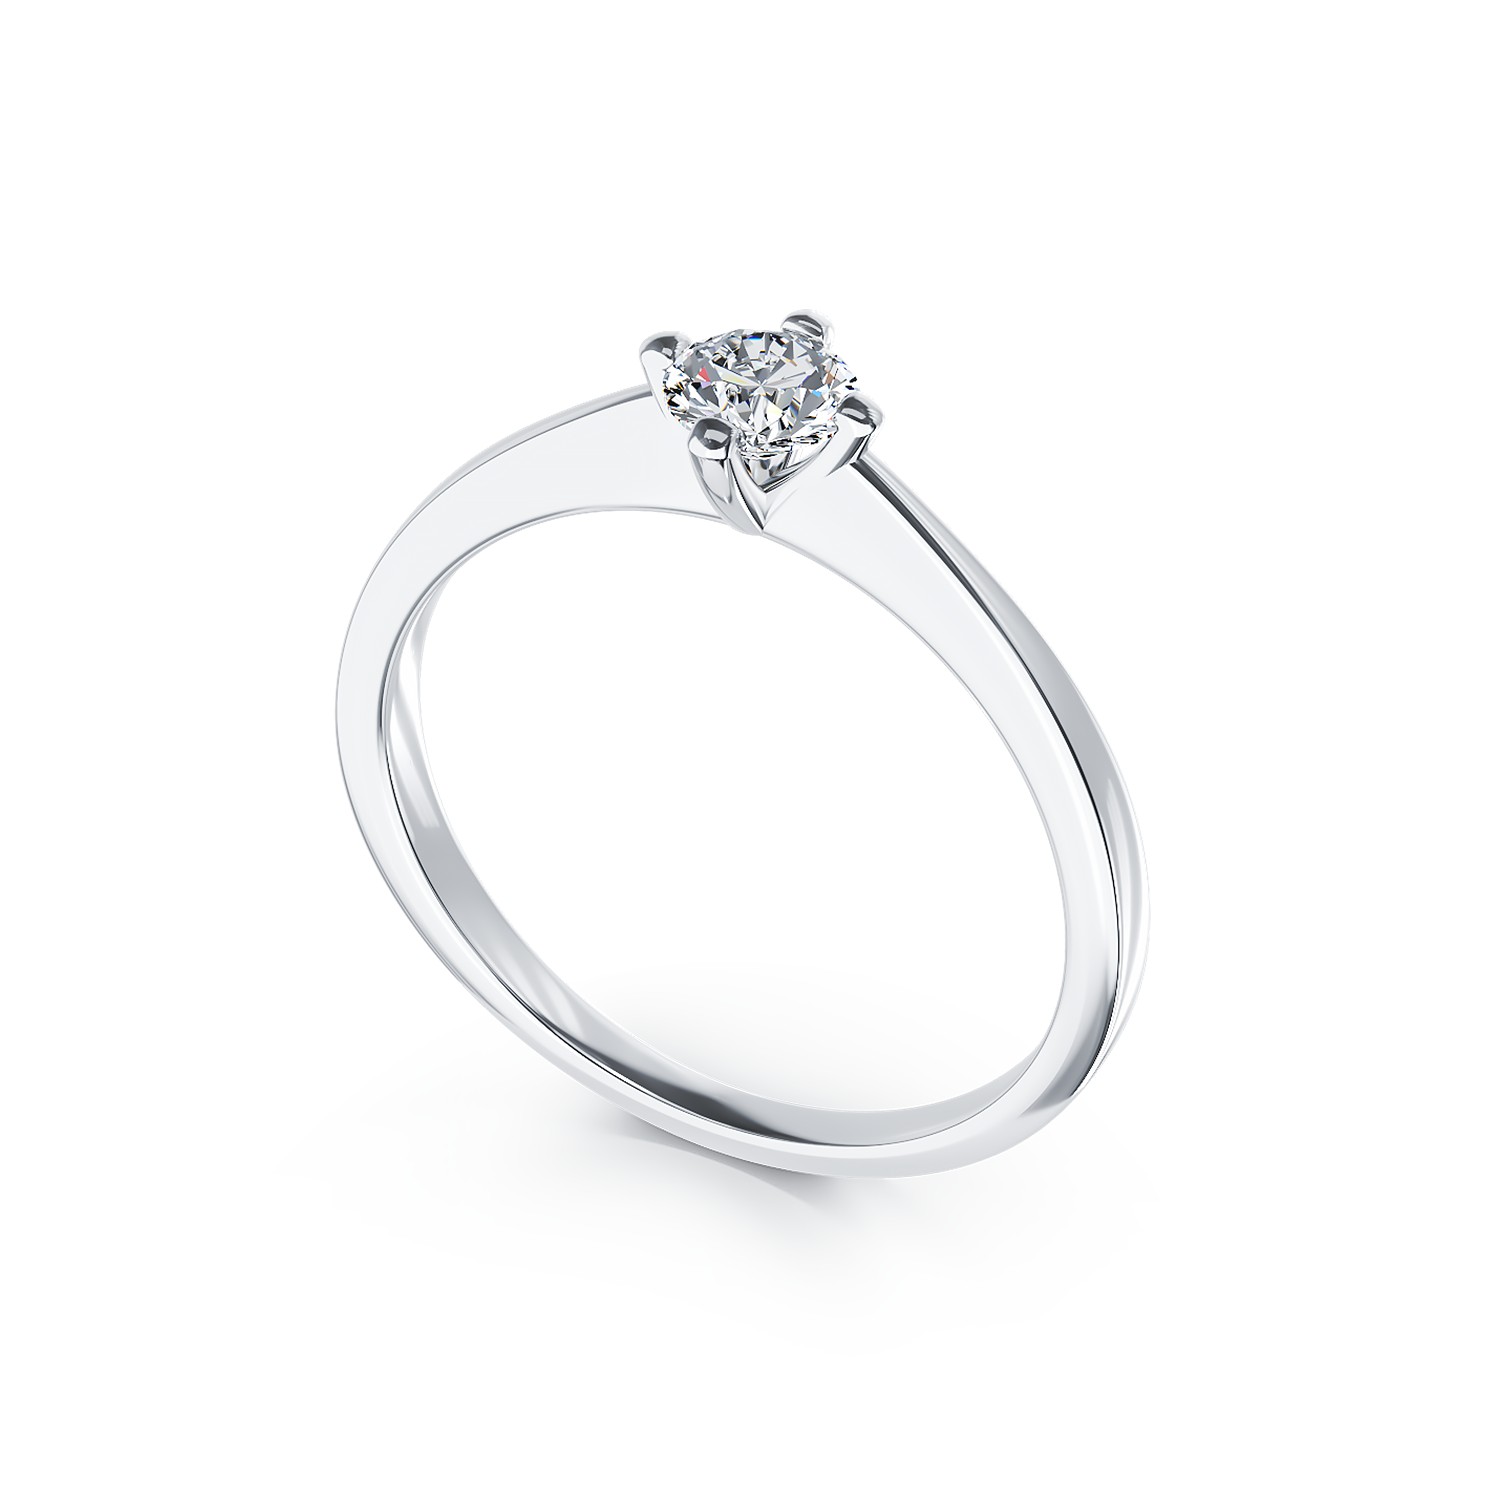 Inel de logodna din aur alb de 18K cu un diamant solitaire de 0.25ct